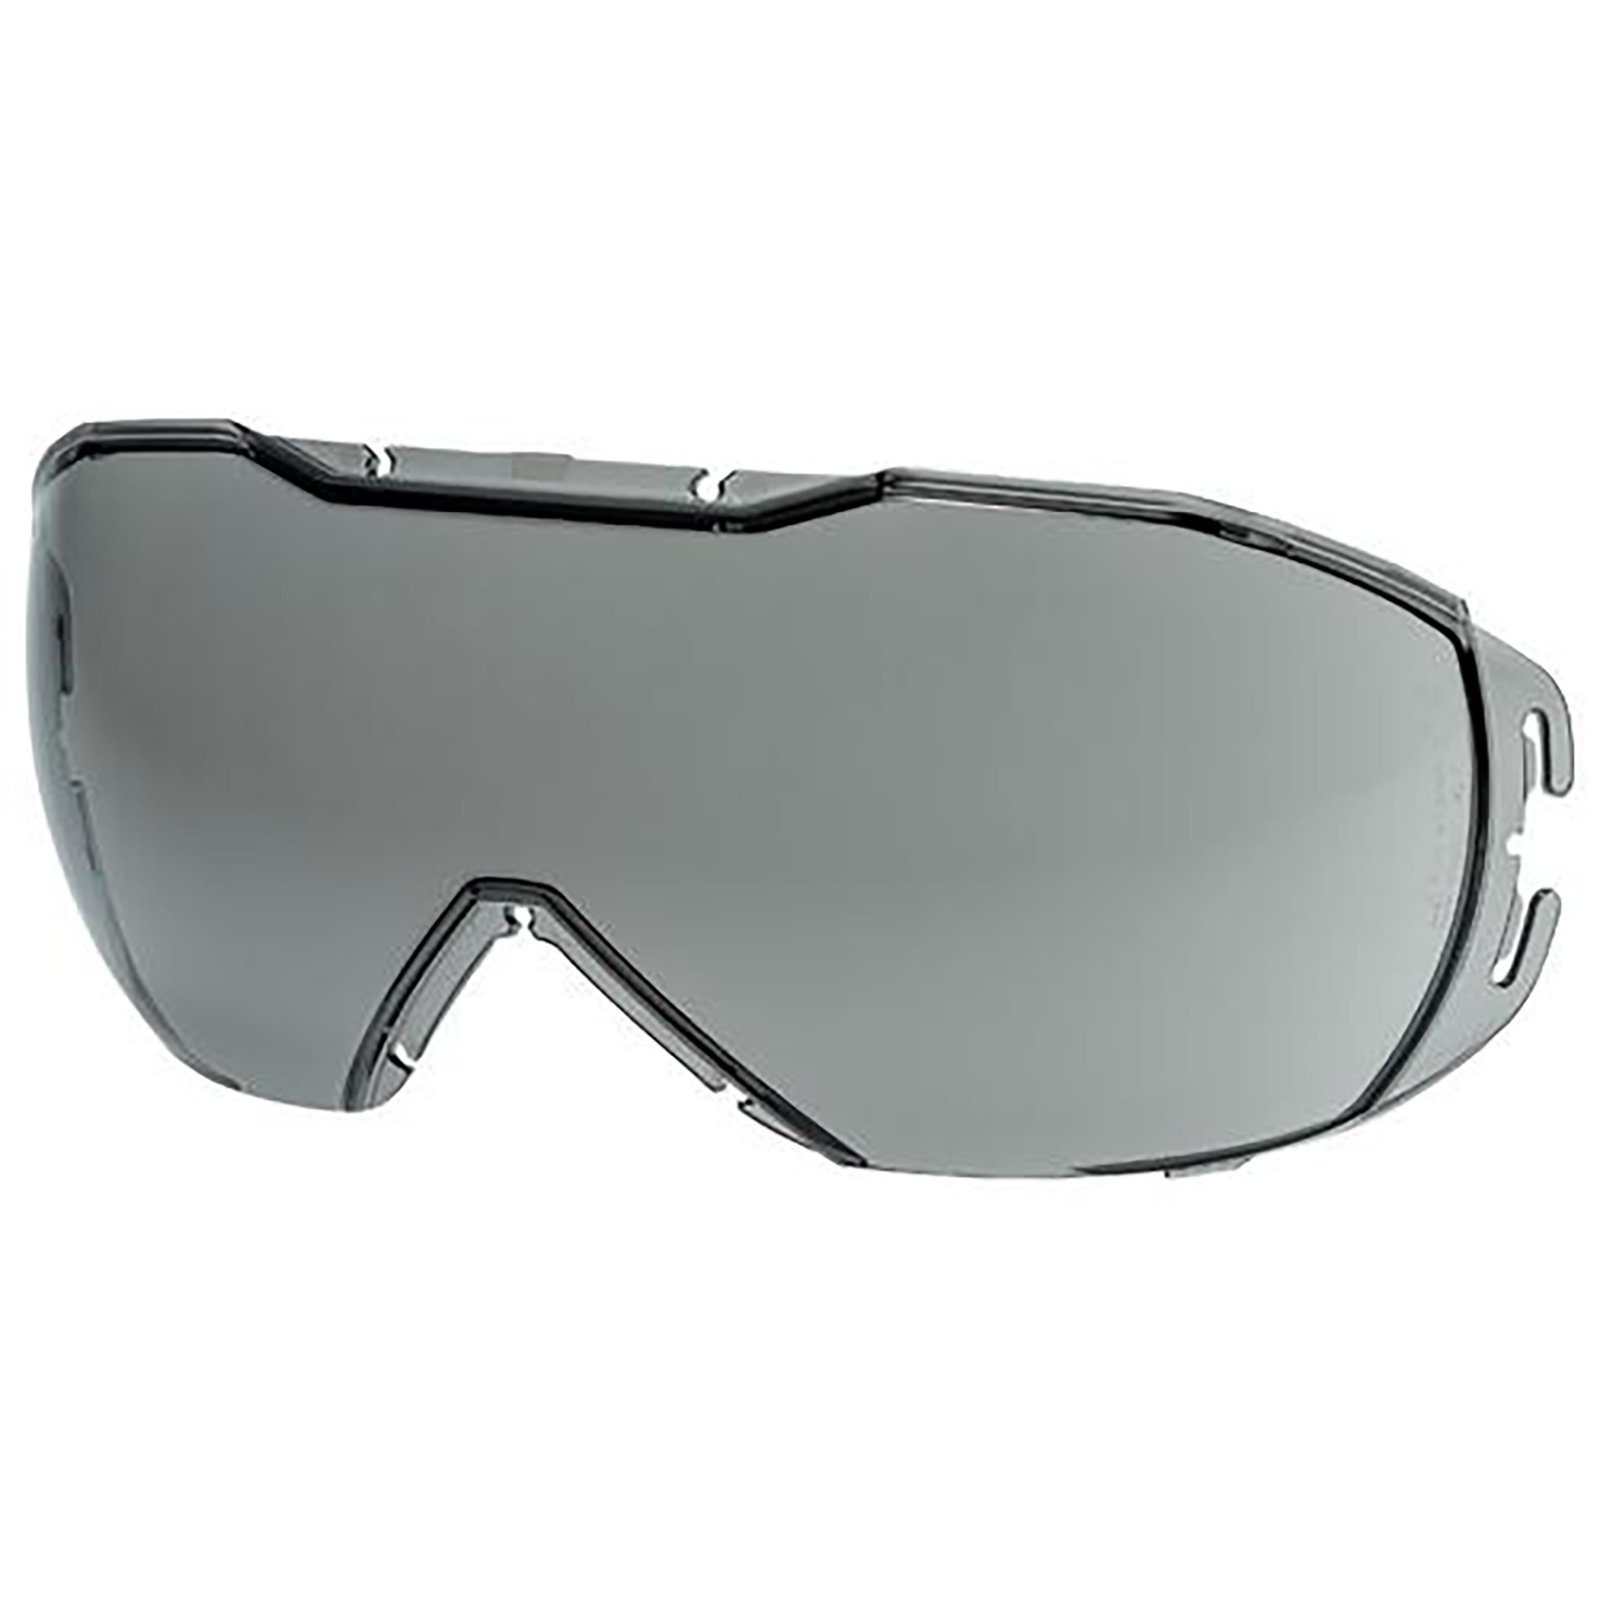 exc. 9320257 sv Uvex Arbeitsschutzbrille Ersatzscheibe grau 23%